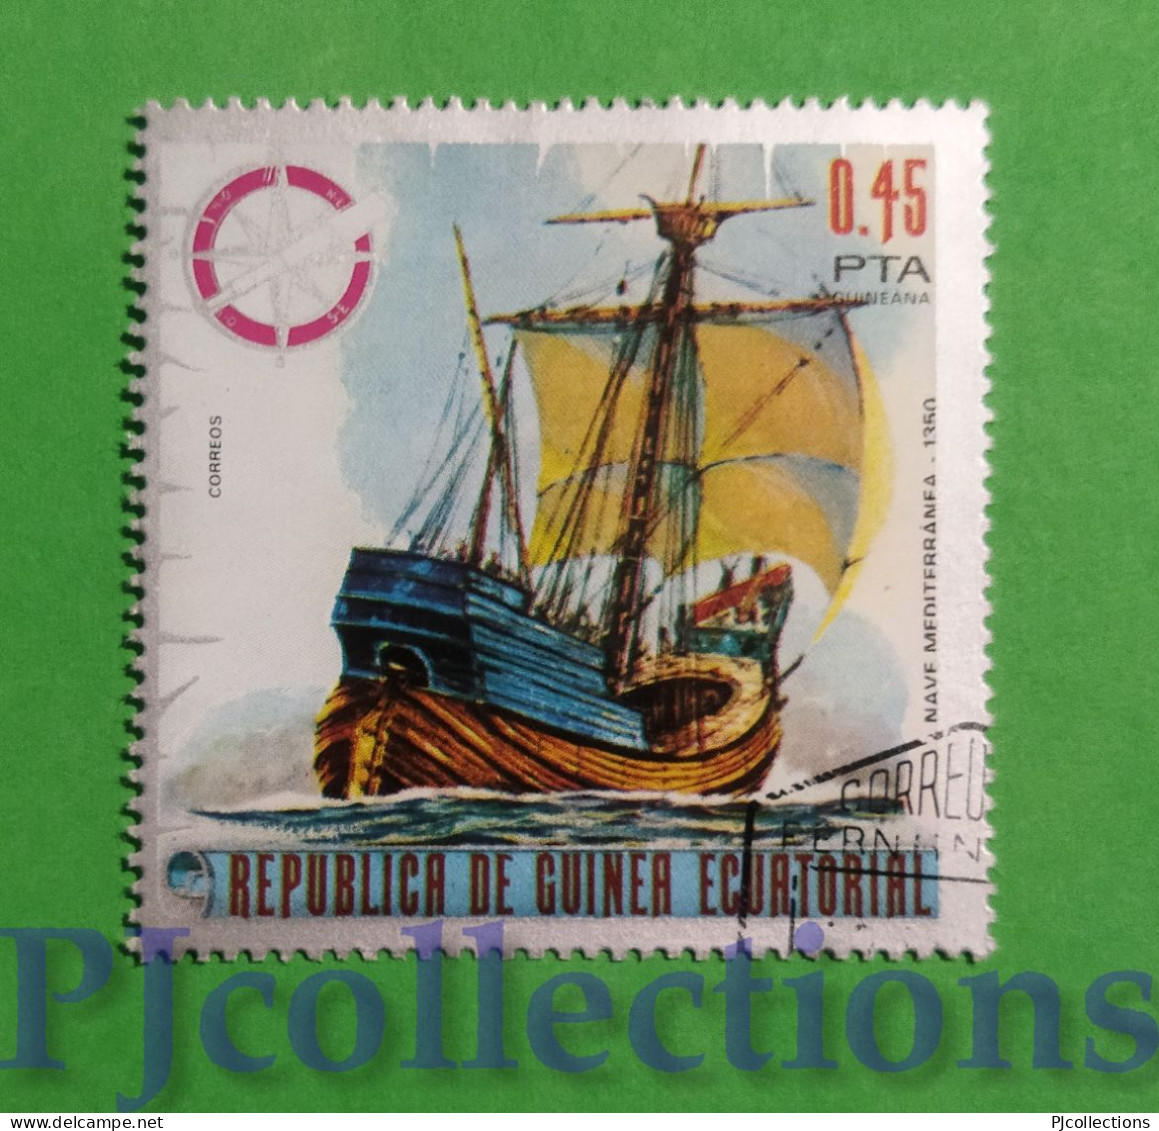 S560 - GUINEA EQUATORIALE 1975 NAVE ANTICA - ANCIENT SHIP 0,45pt USATO - USED - Guinée Equatoriale